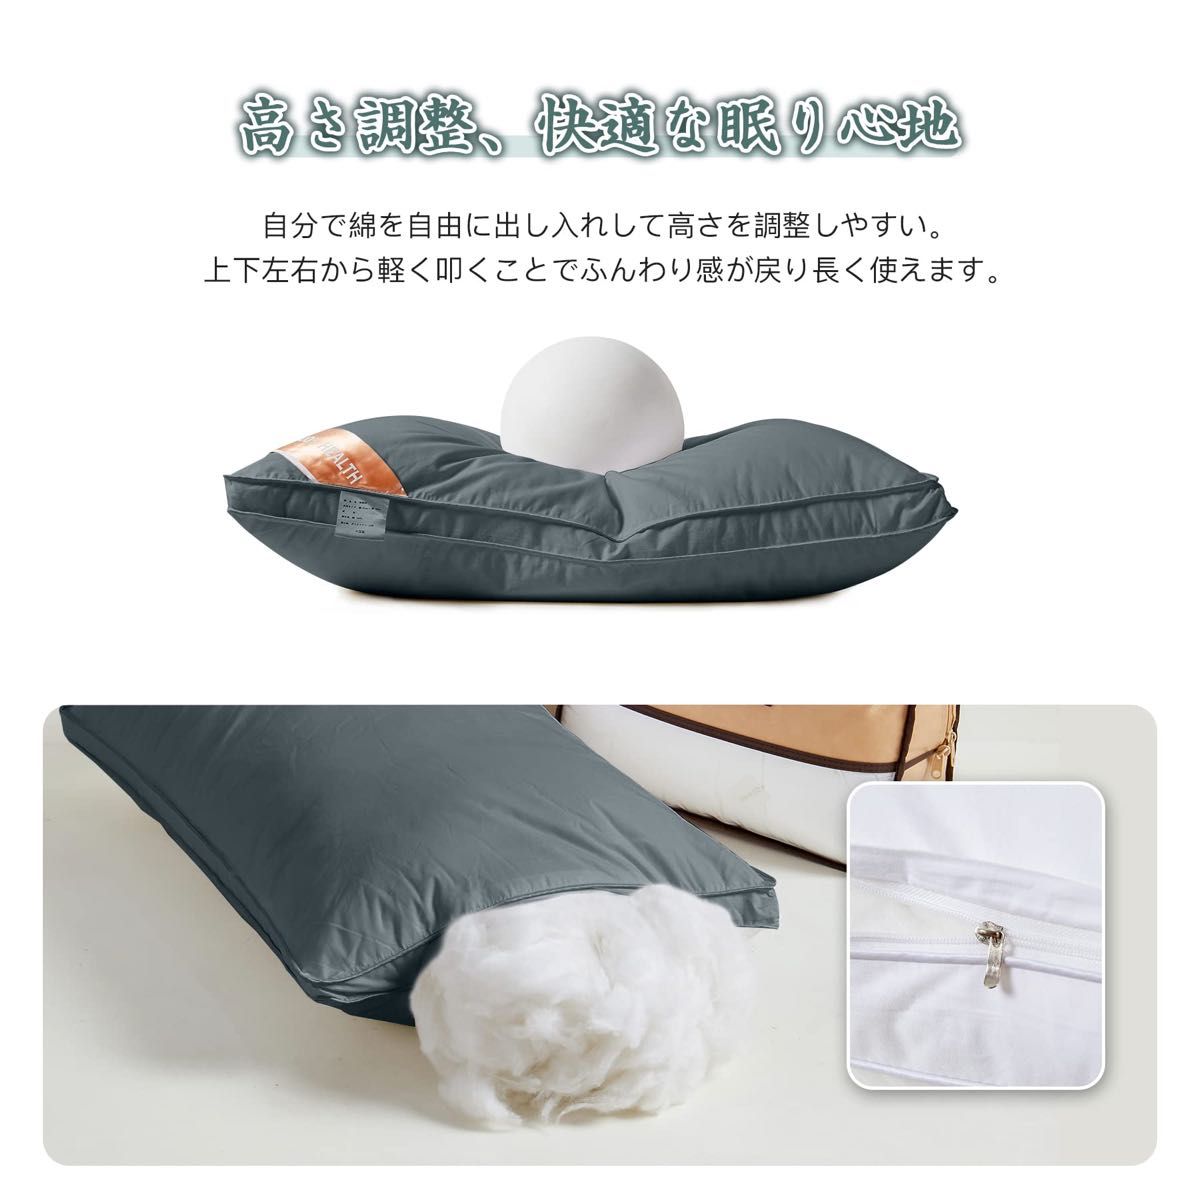 2個セット枕まくら 高級ホテル仕様 高反発枕 横向き対応 丸洗い可能 立体構造 グレー 枕ライナー取り外し可グレー50x70cm